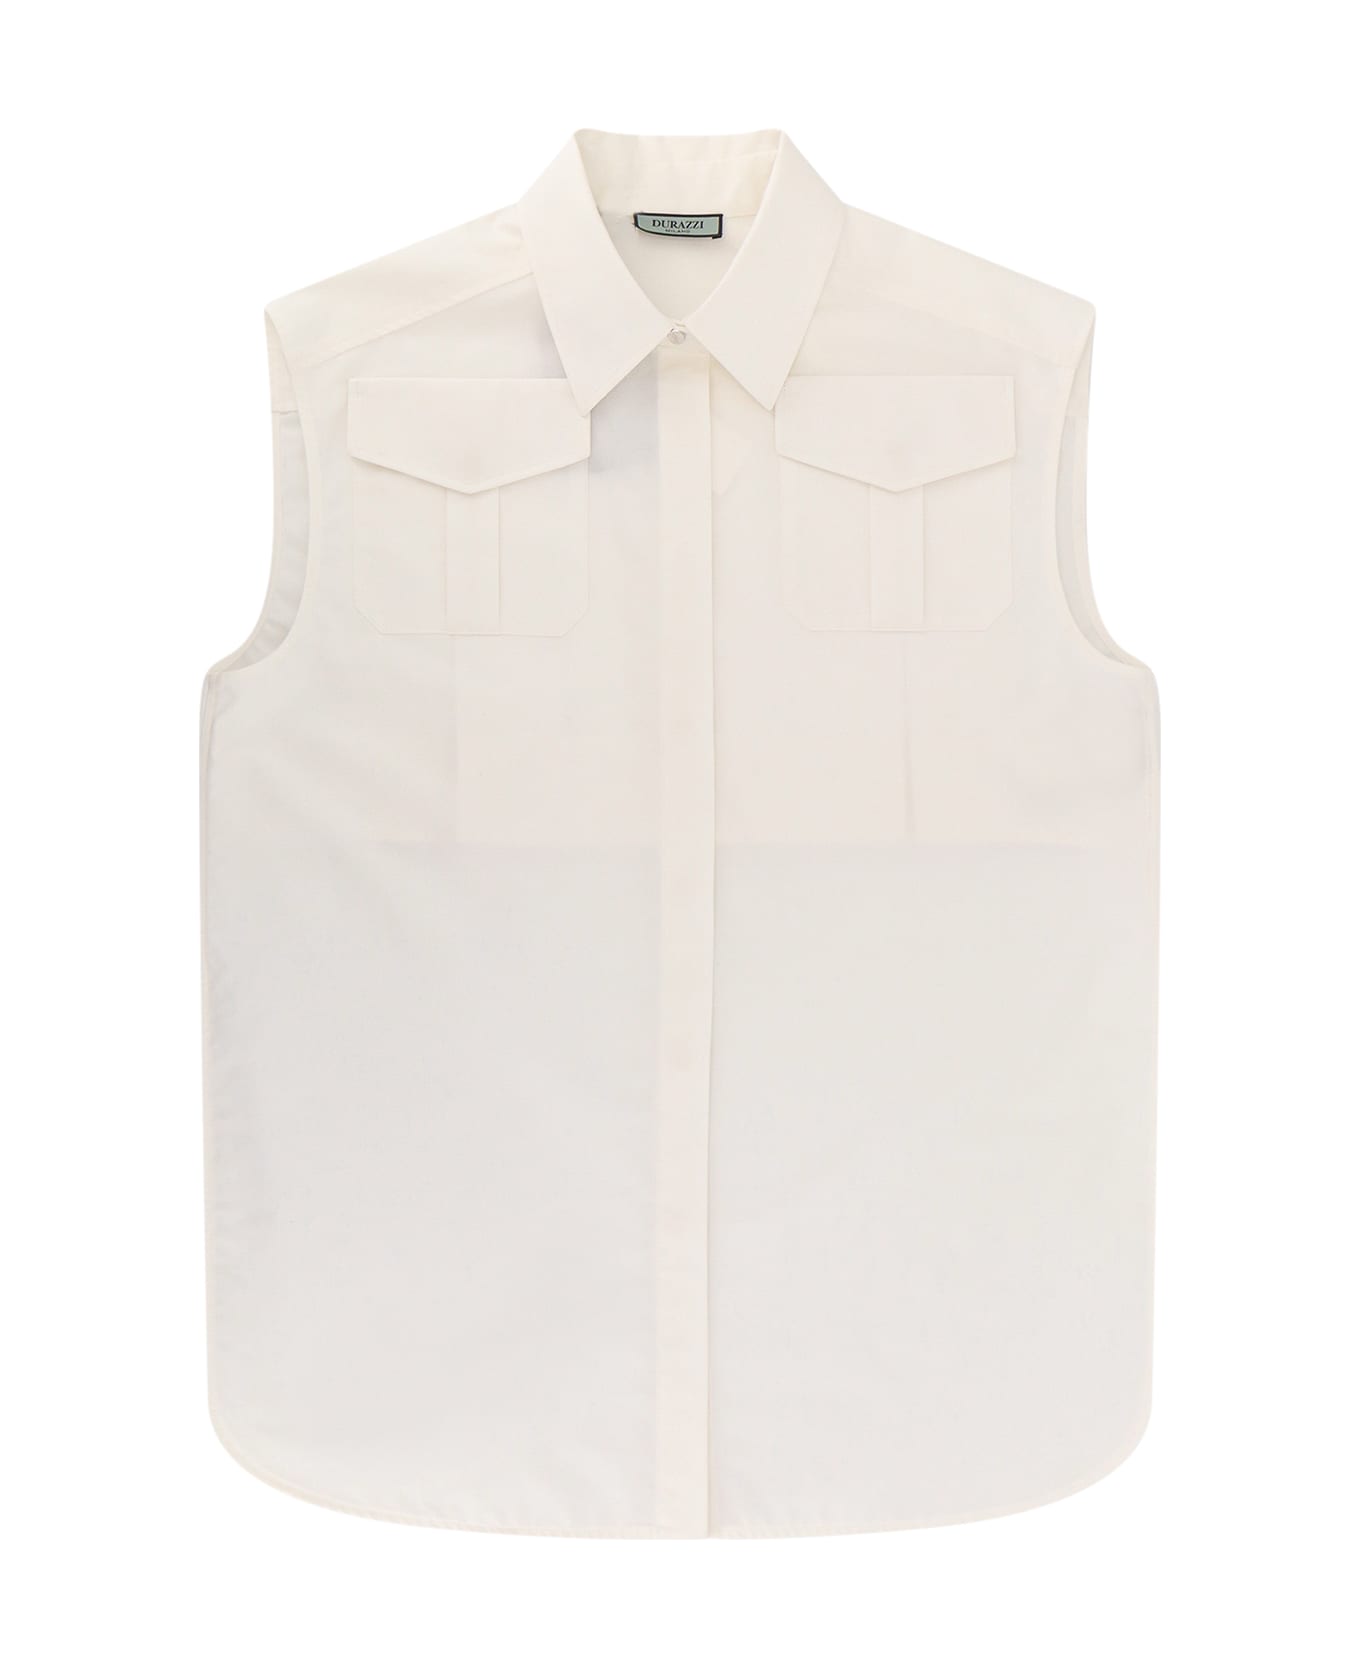 Durazzi Milano Shirt - White